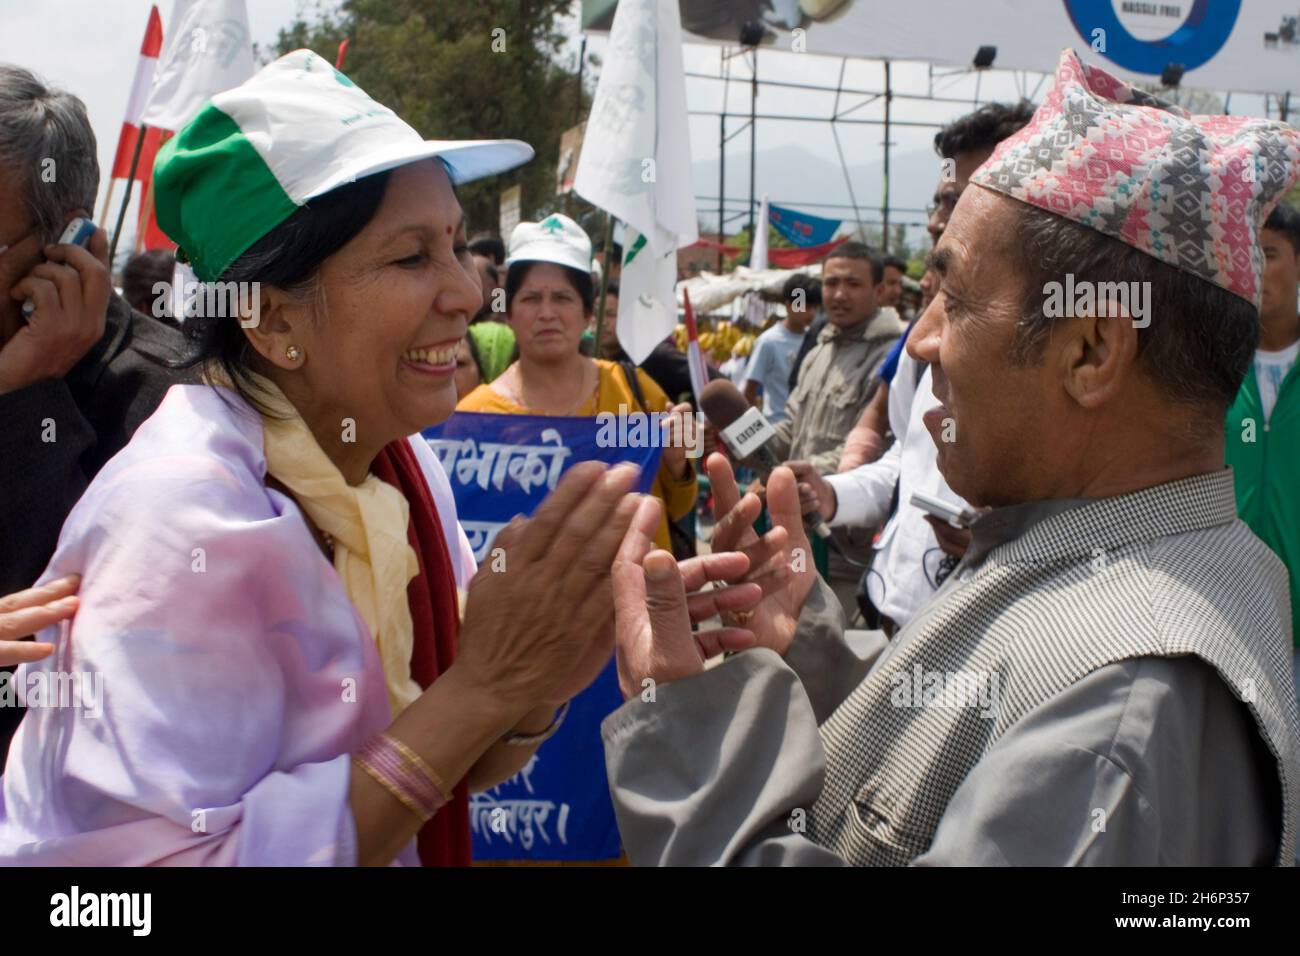 Congresso Nepalese Rappresentante proporzionale candidato Bijaya Shrestha KC (a sinistra) saluto un sostenitore ad un raduno a Kathmandu, 5 giorni prima che il Nepal vada ai sondaggi dell'Assemblea costituente. Kathmandu, Nepal. 5 aprile 2008. Foto Stock